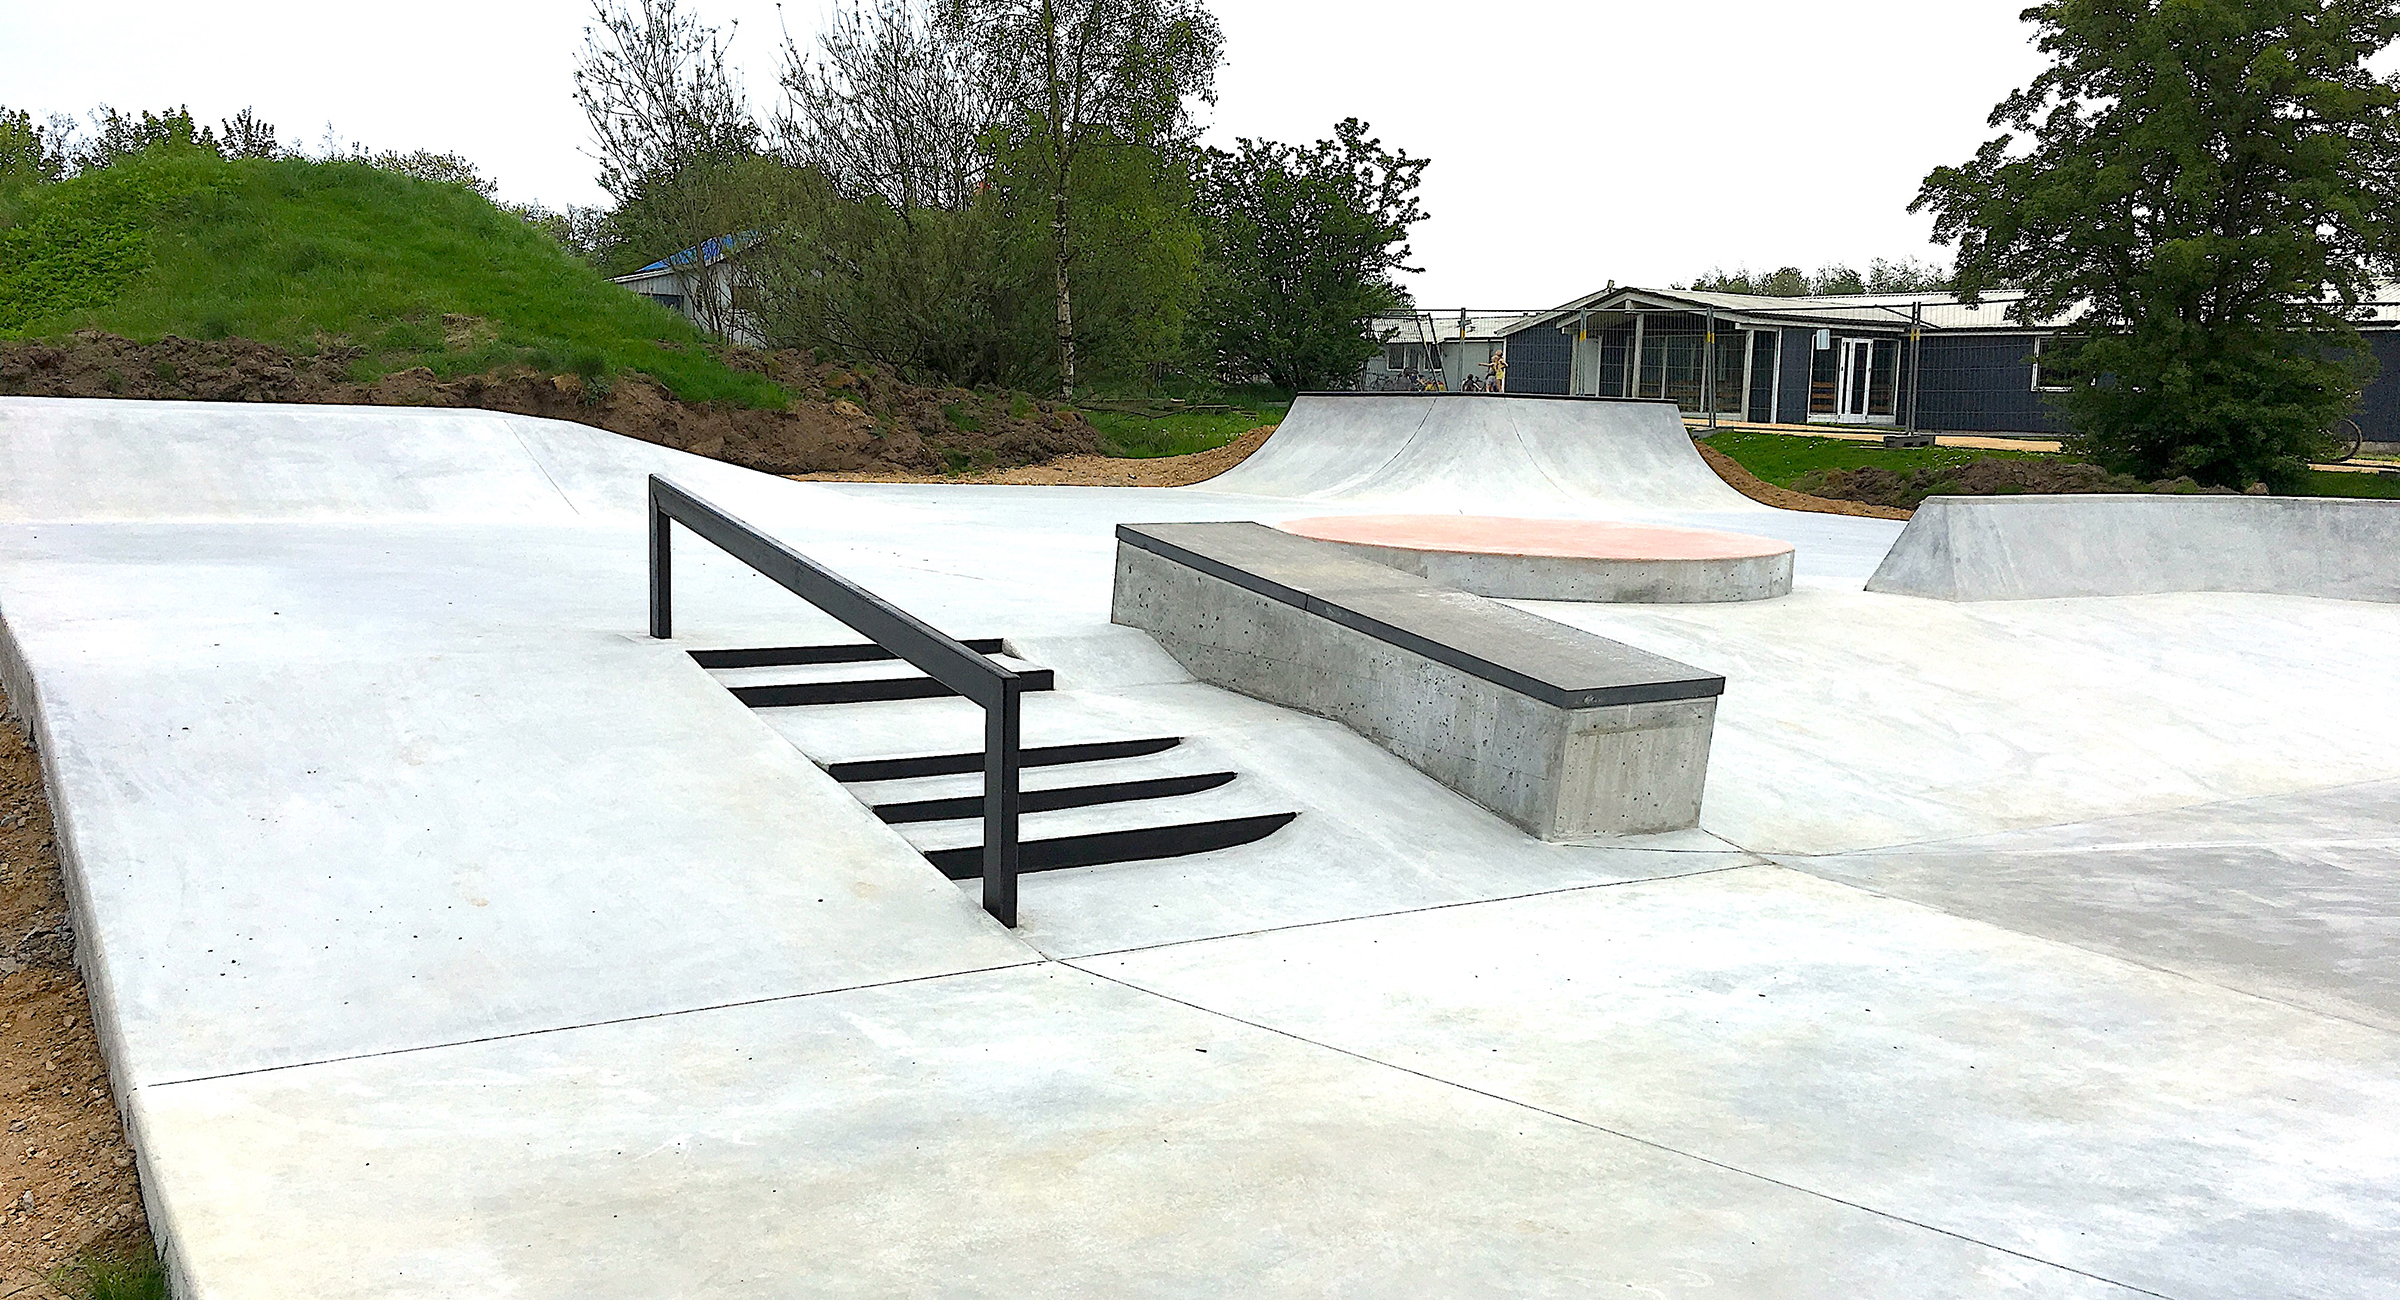 En skatepark med rail, dobbeltsæt trappe og ledge i beton